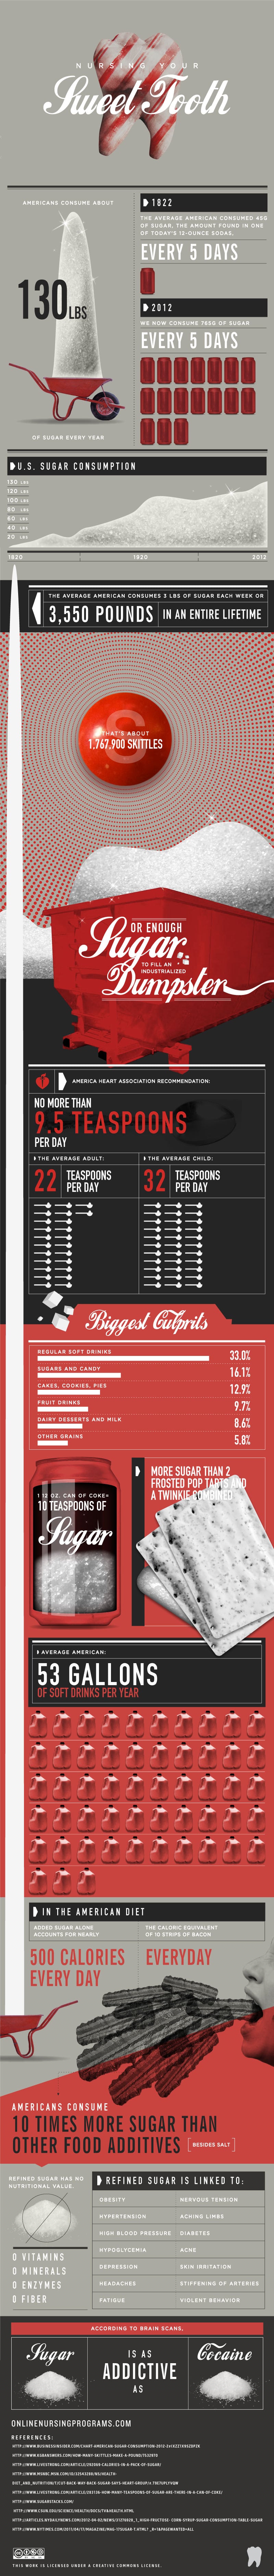 sugar-consumption-in-america-infographic